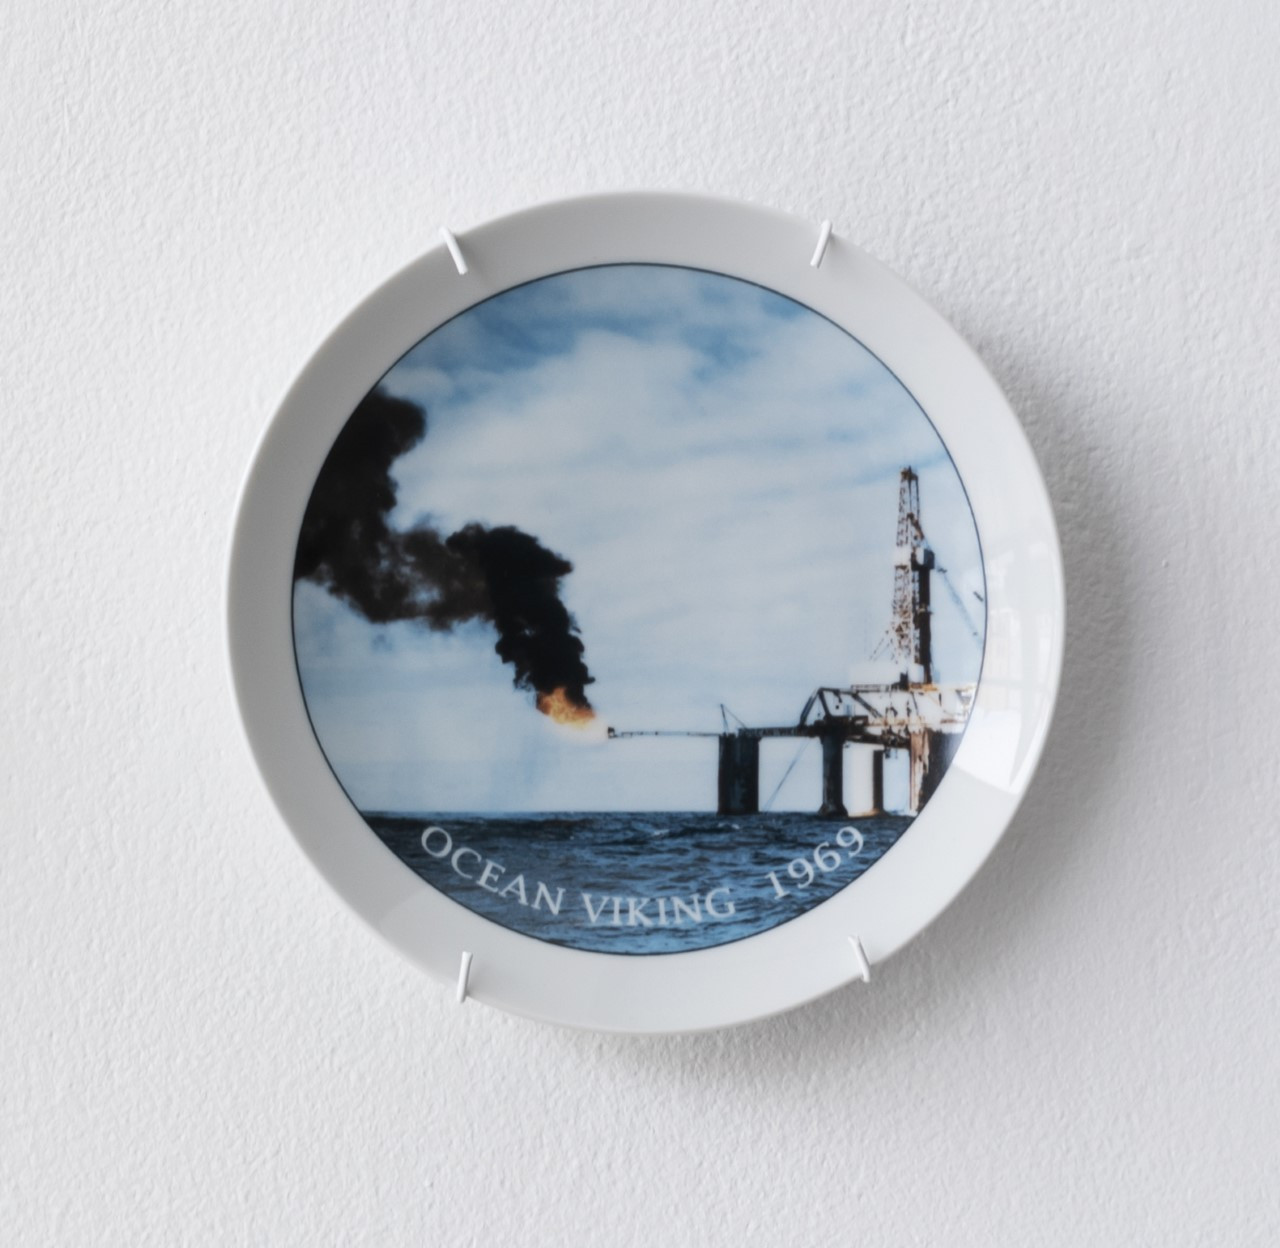 Ocean Viking, Porcelain Plate. Photo: Susann Jamtøy 2019